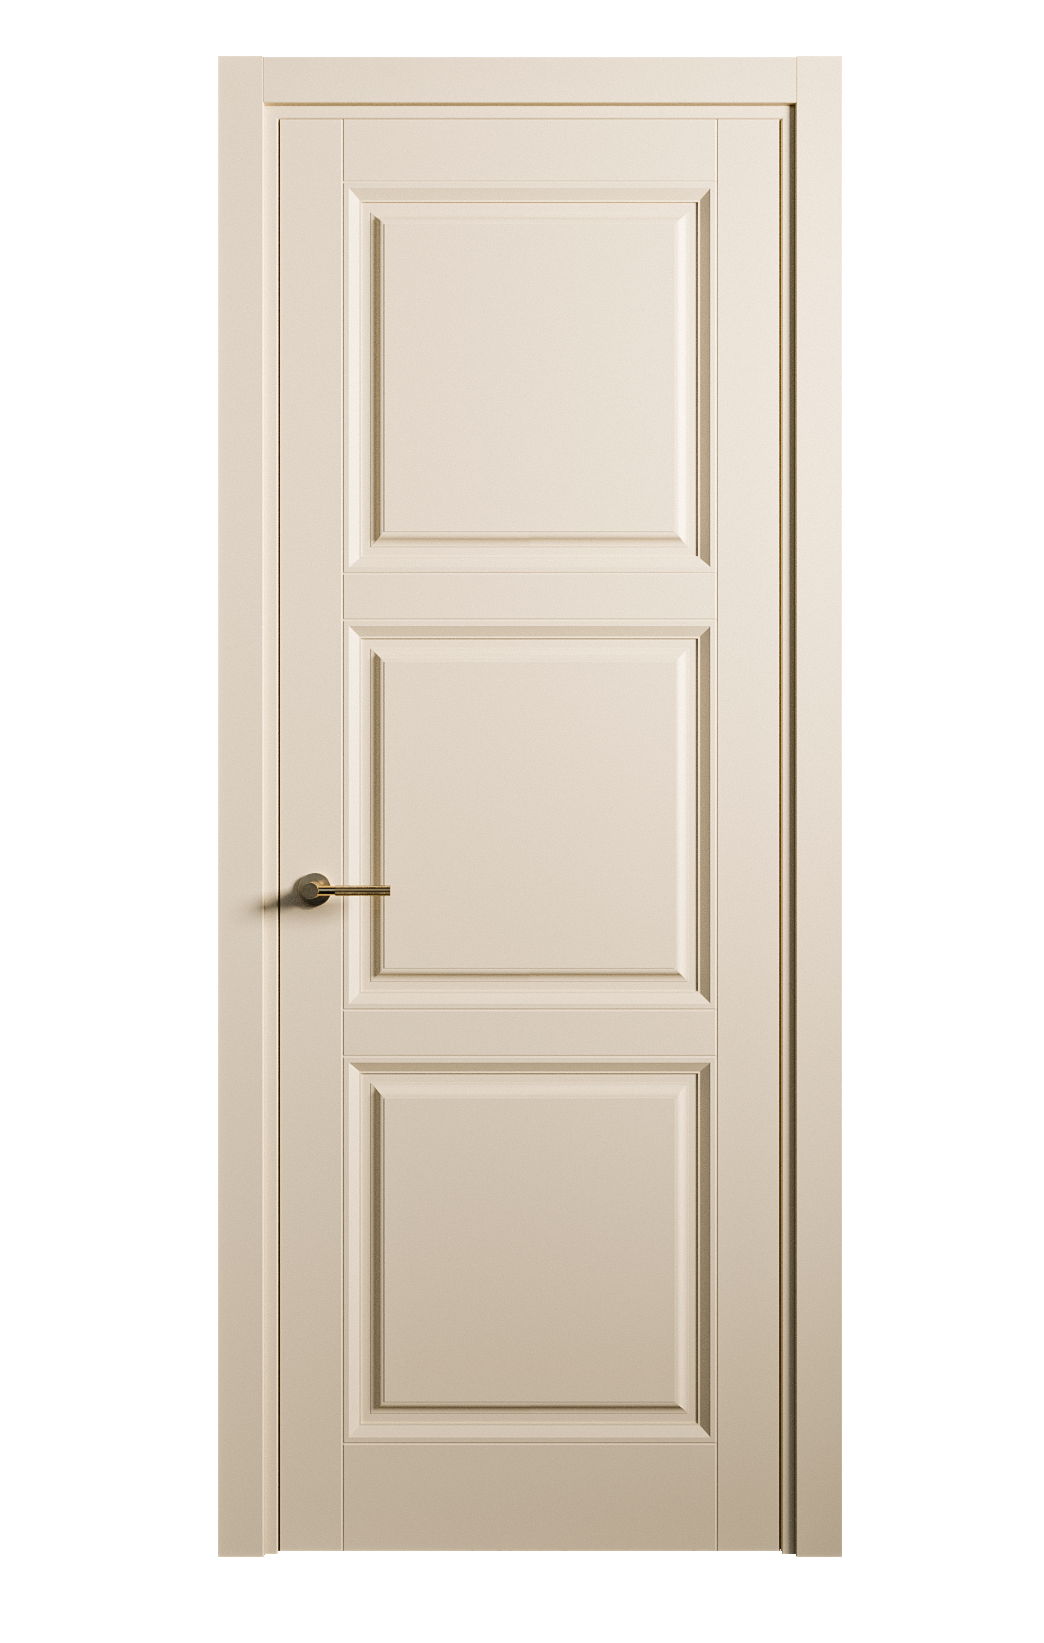 Межкомнатная дверь Venezia-3 глухая эмаль ral 1015 25765